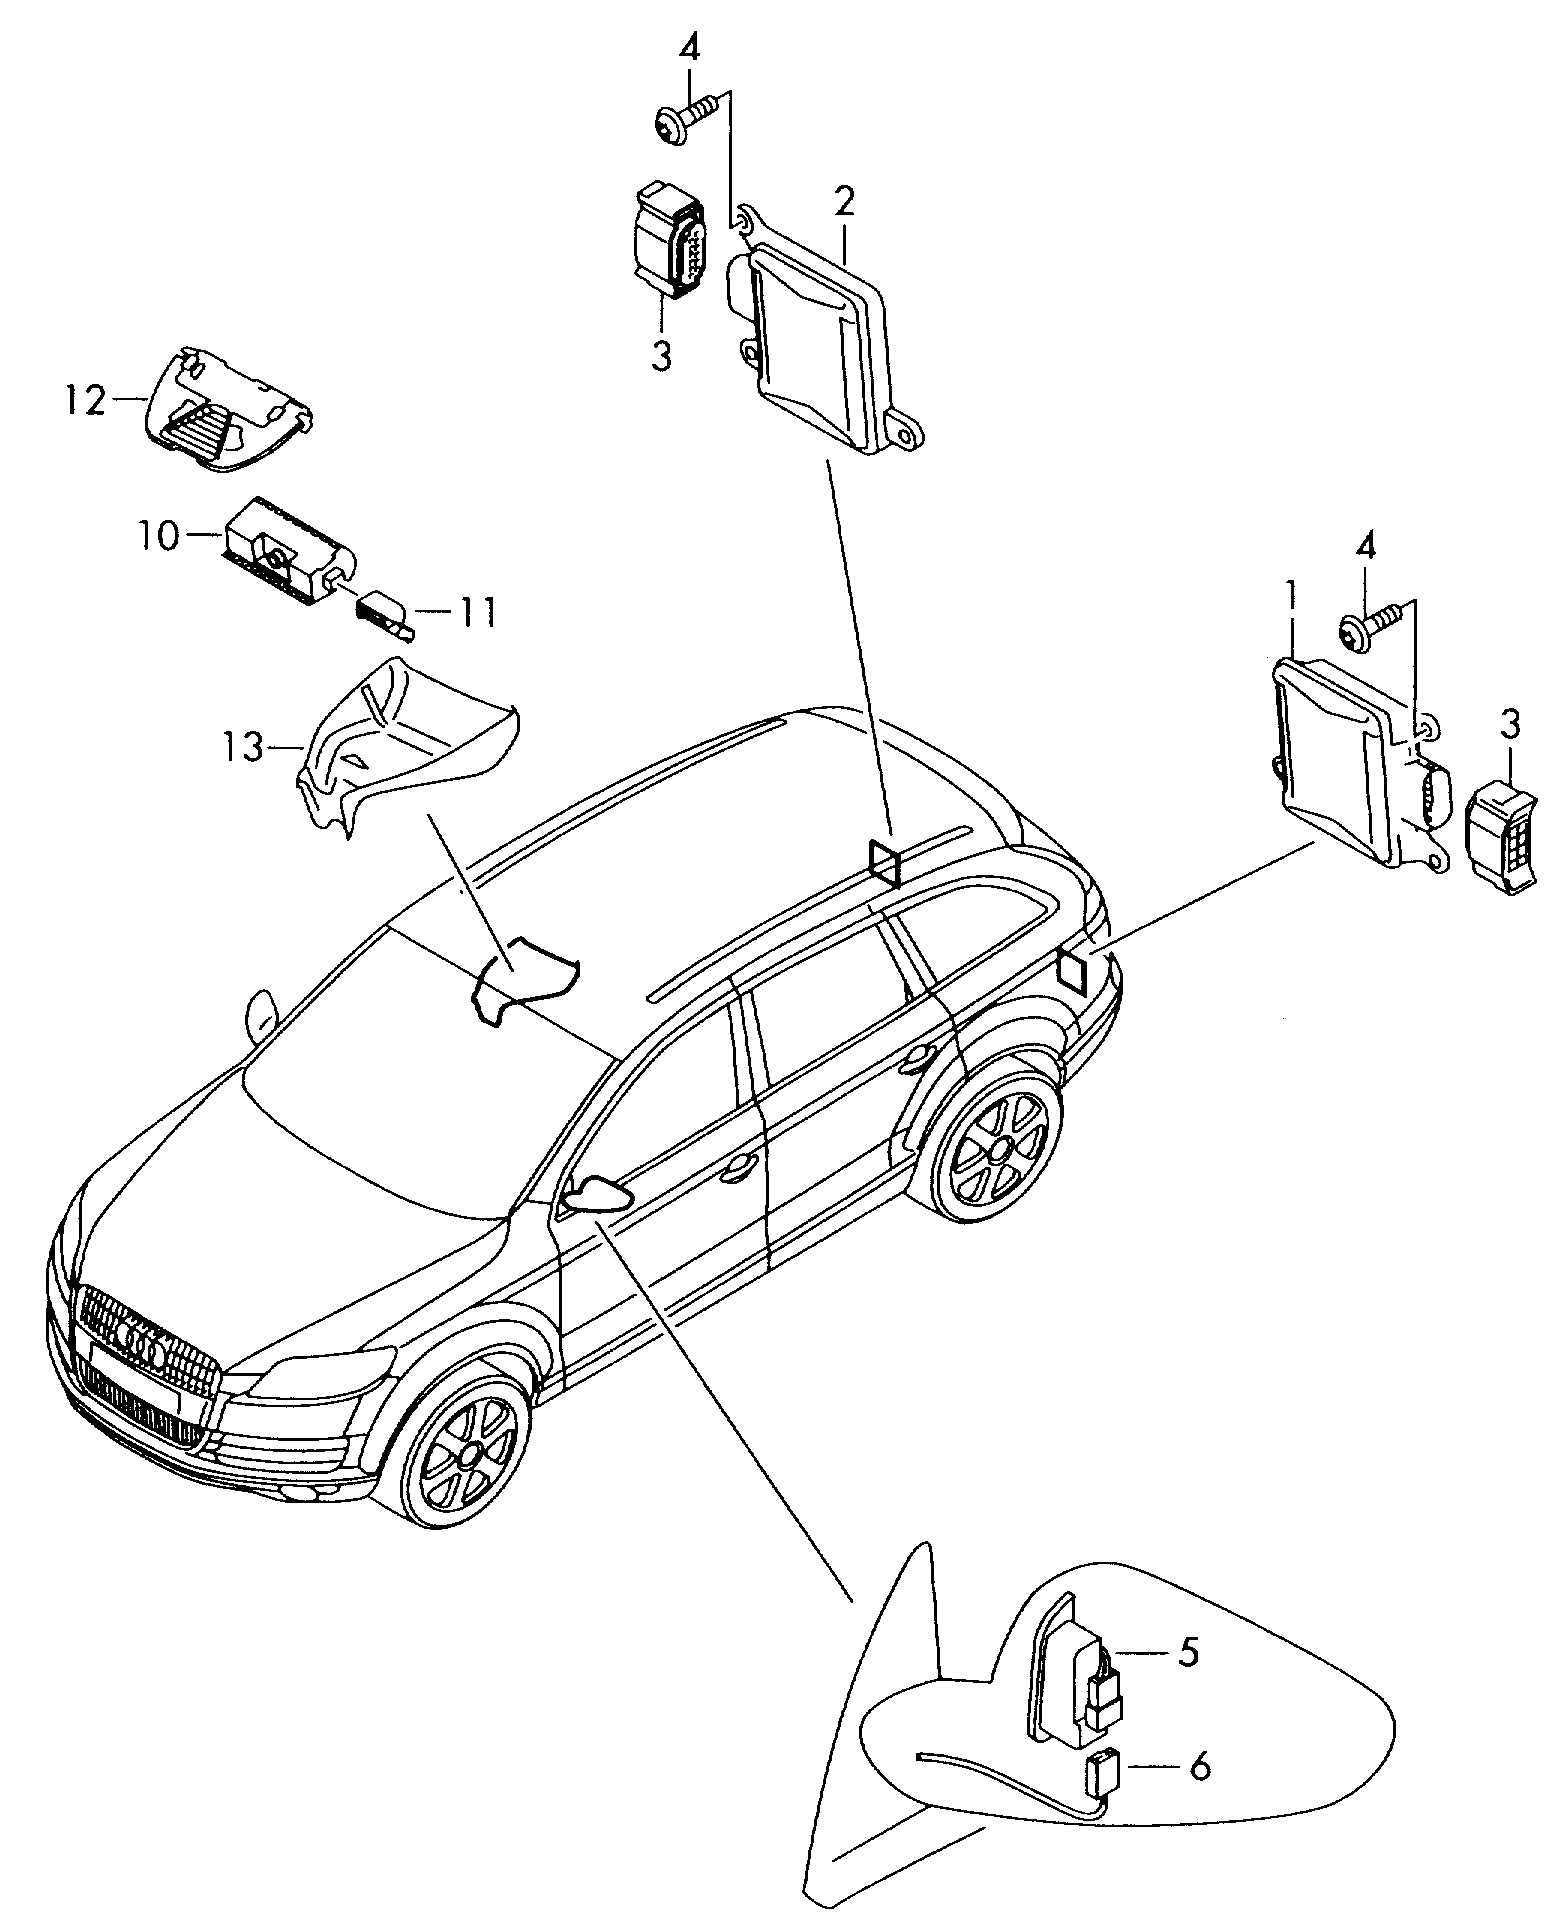 regelapparaat voor lane assist
met camera - Audi A6/Avant(A6)  